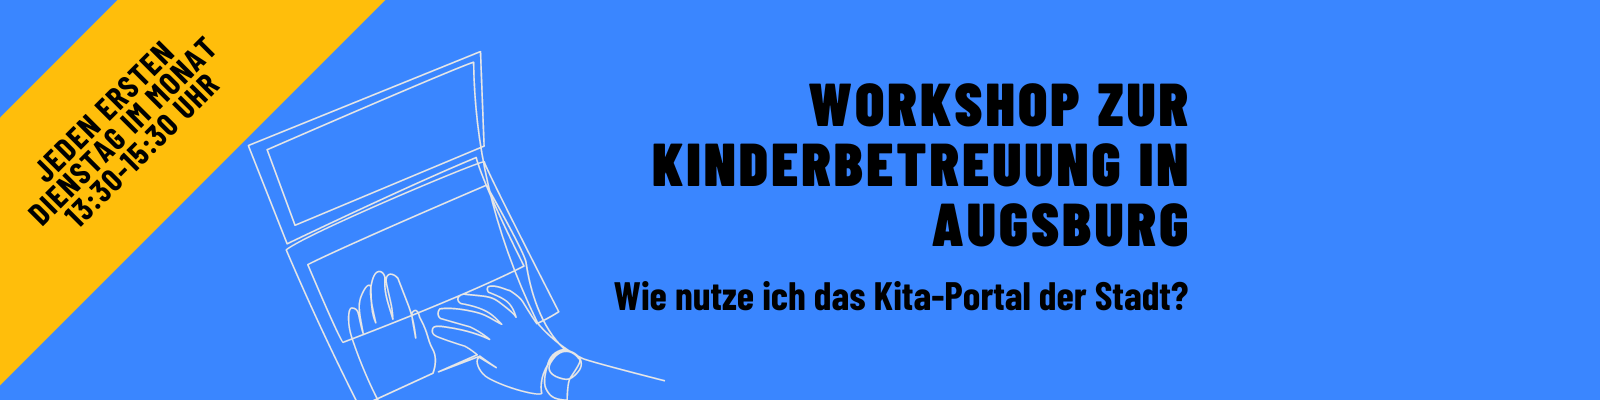 Workshop zum Thema Kinderbetreuung in Augsburg.